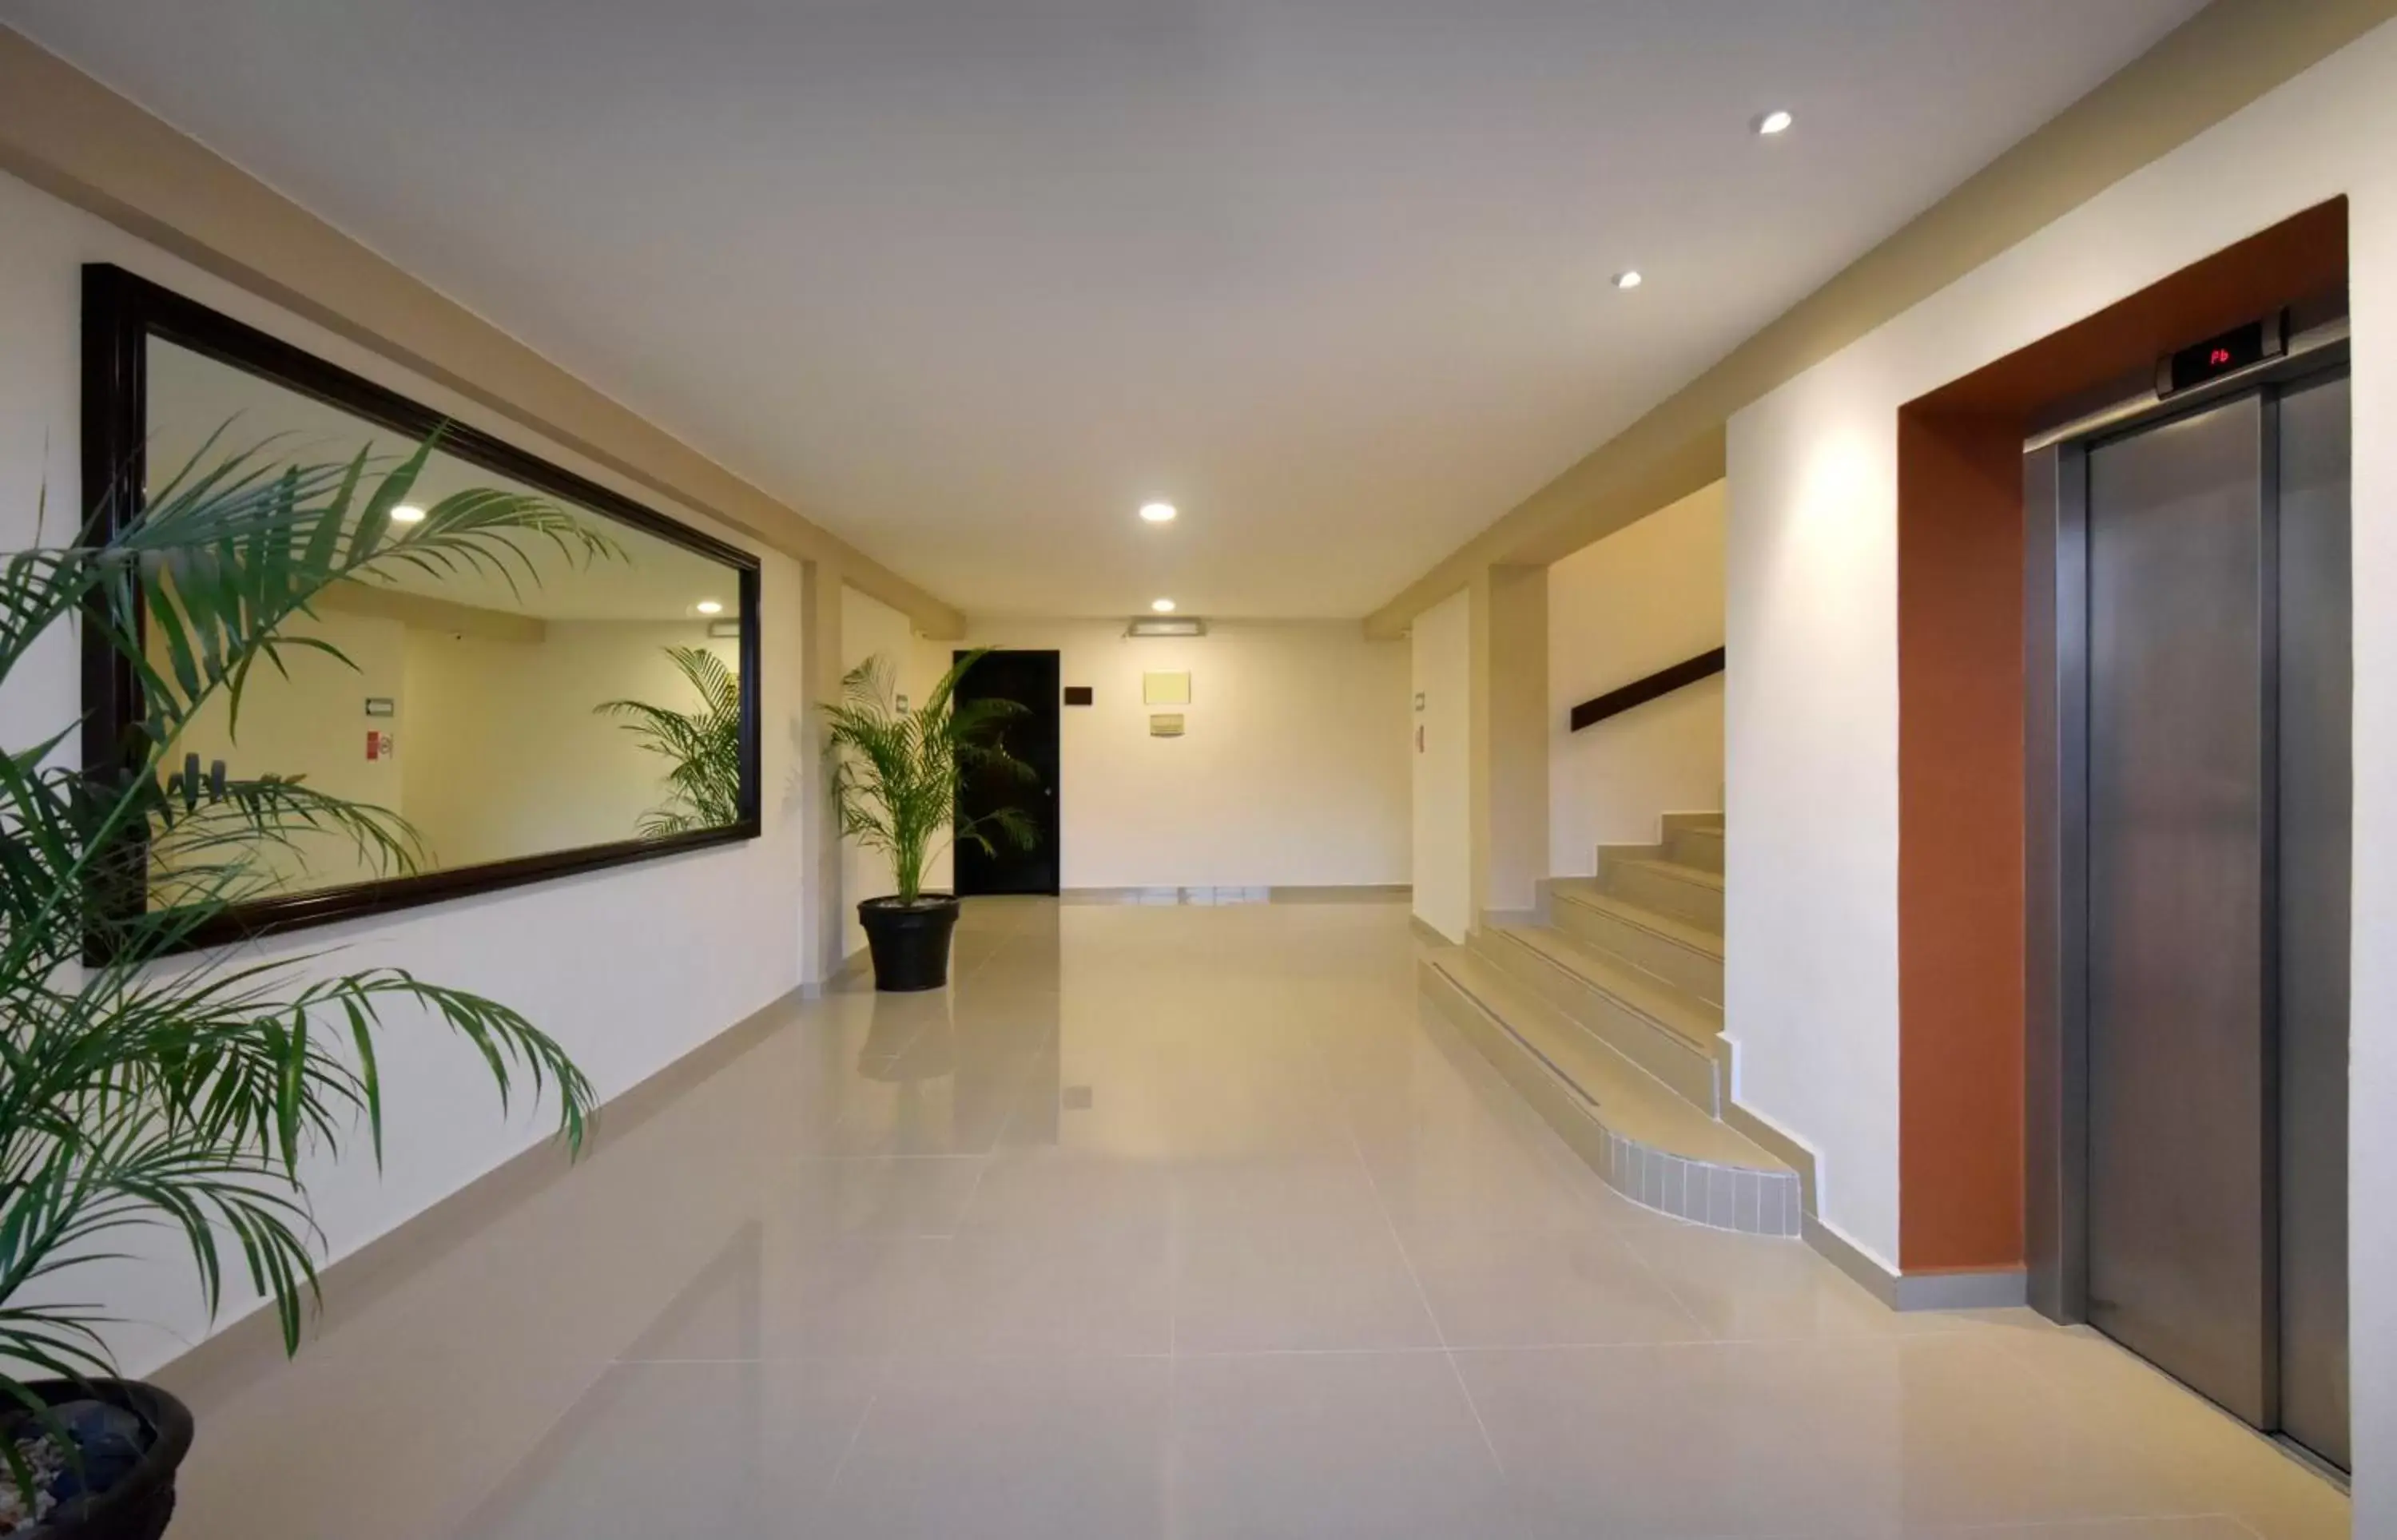 Area and facilities, Lobby/Reception in Hotel Bonampak